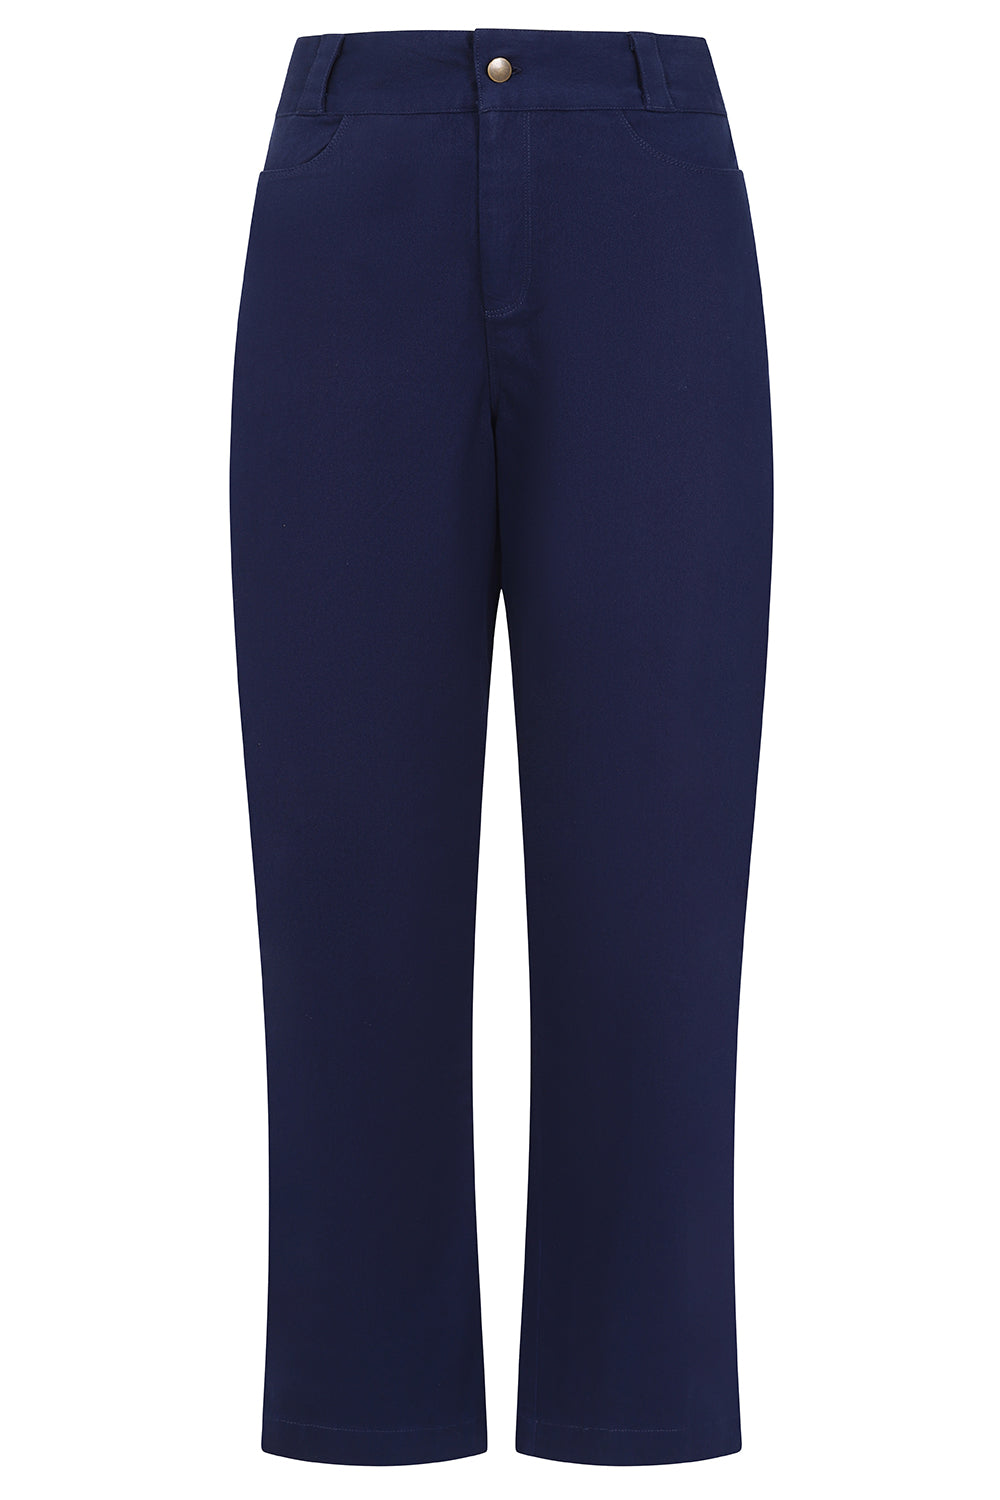 Caraway Pant - Navy - Organic Cotton Jean